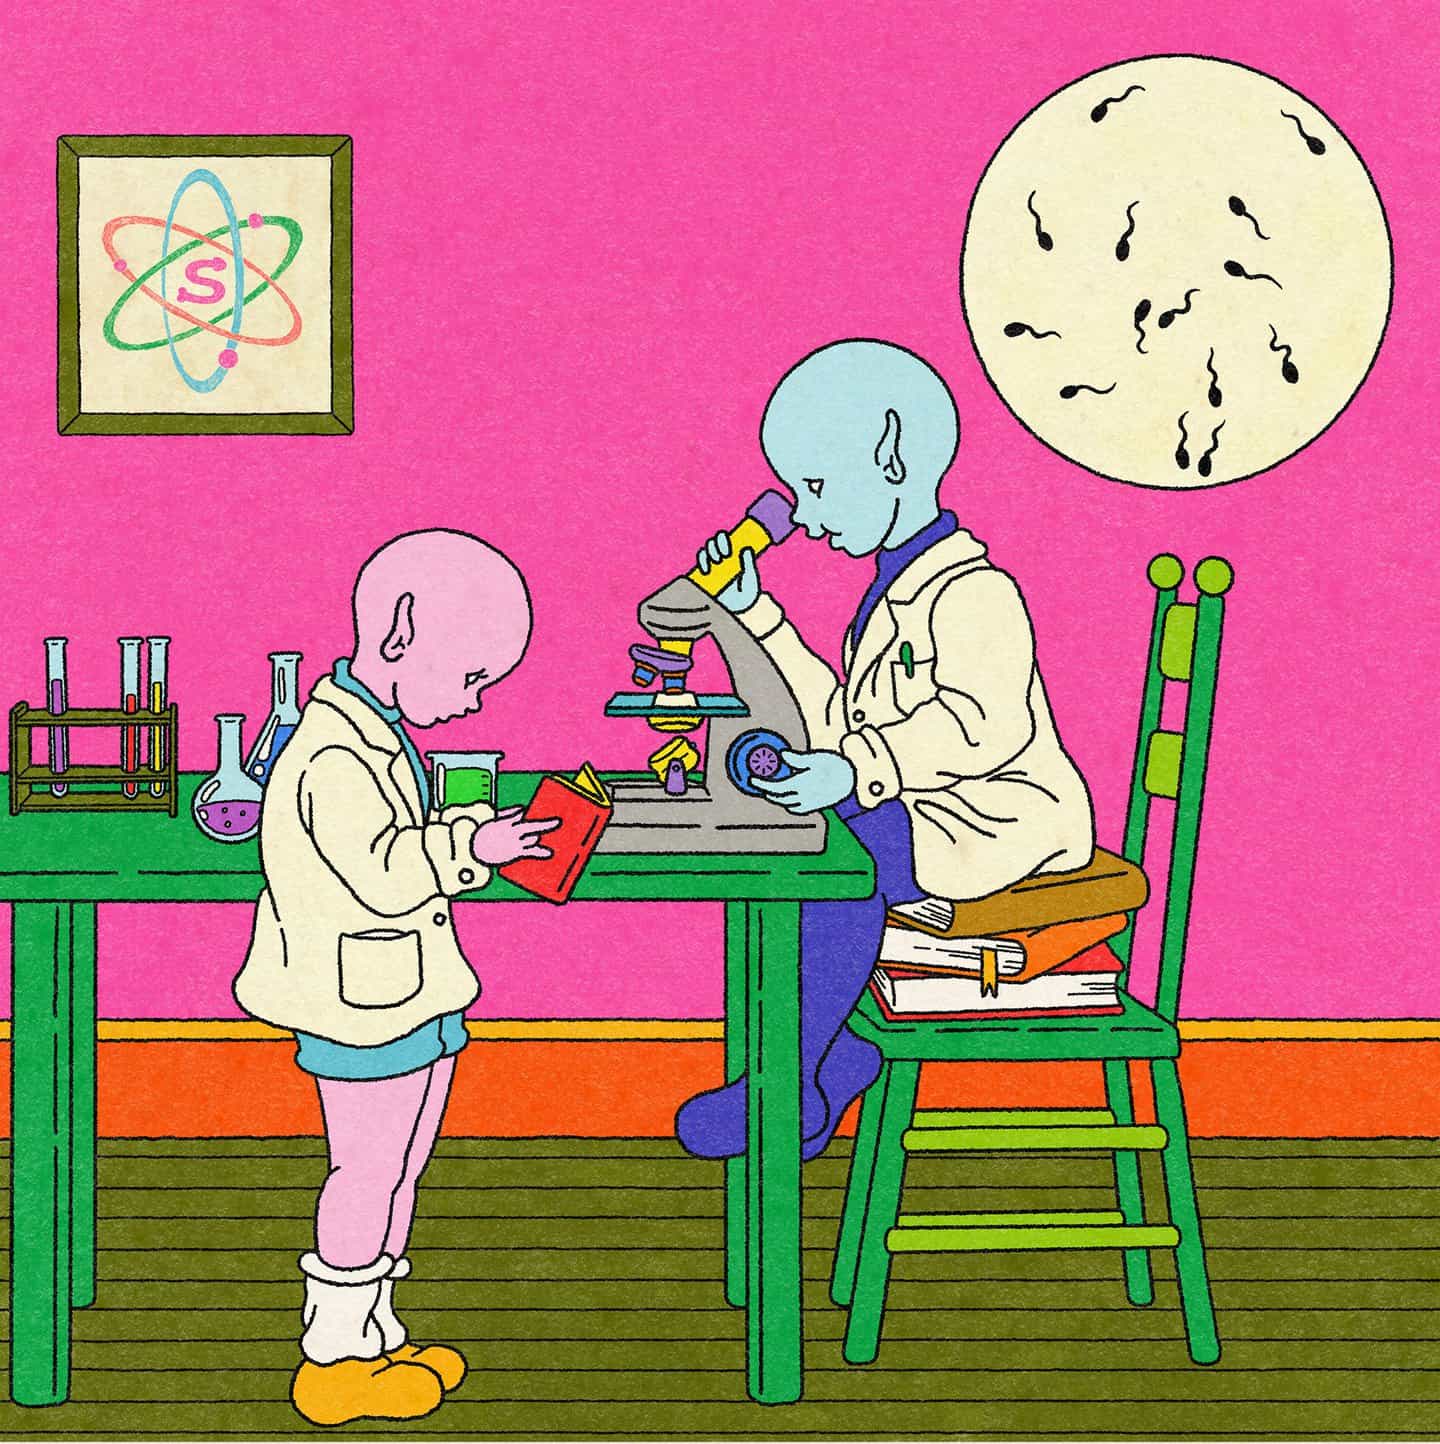 La ilustradora Annie Li habla sobre lo que los humanos pueden aprender de su personaje alienígena azul bebé altamente inteligente